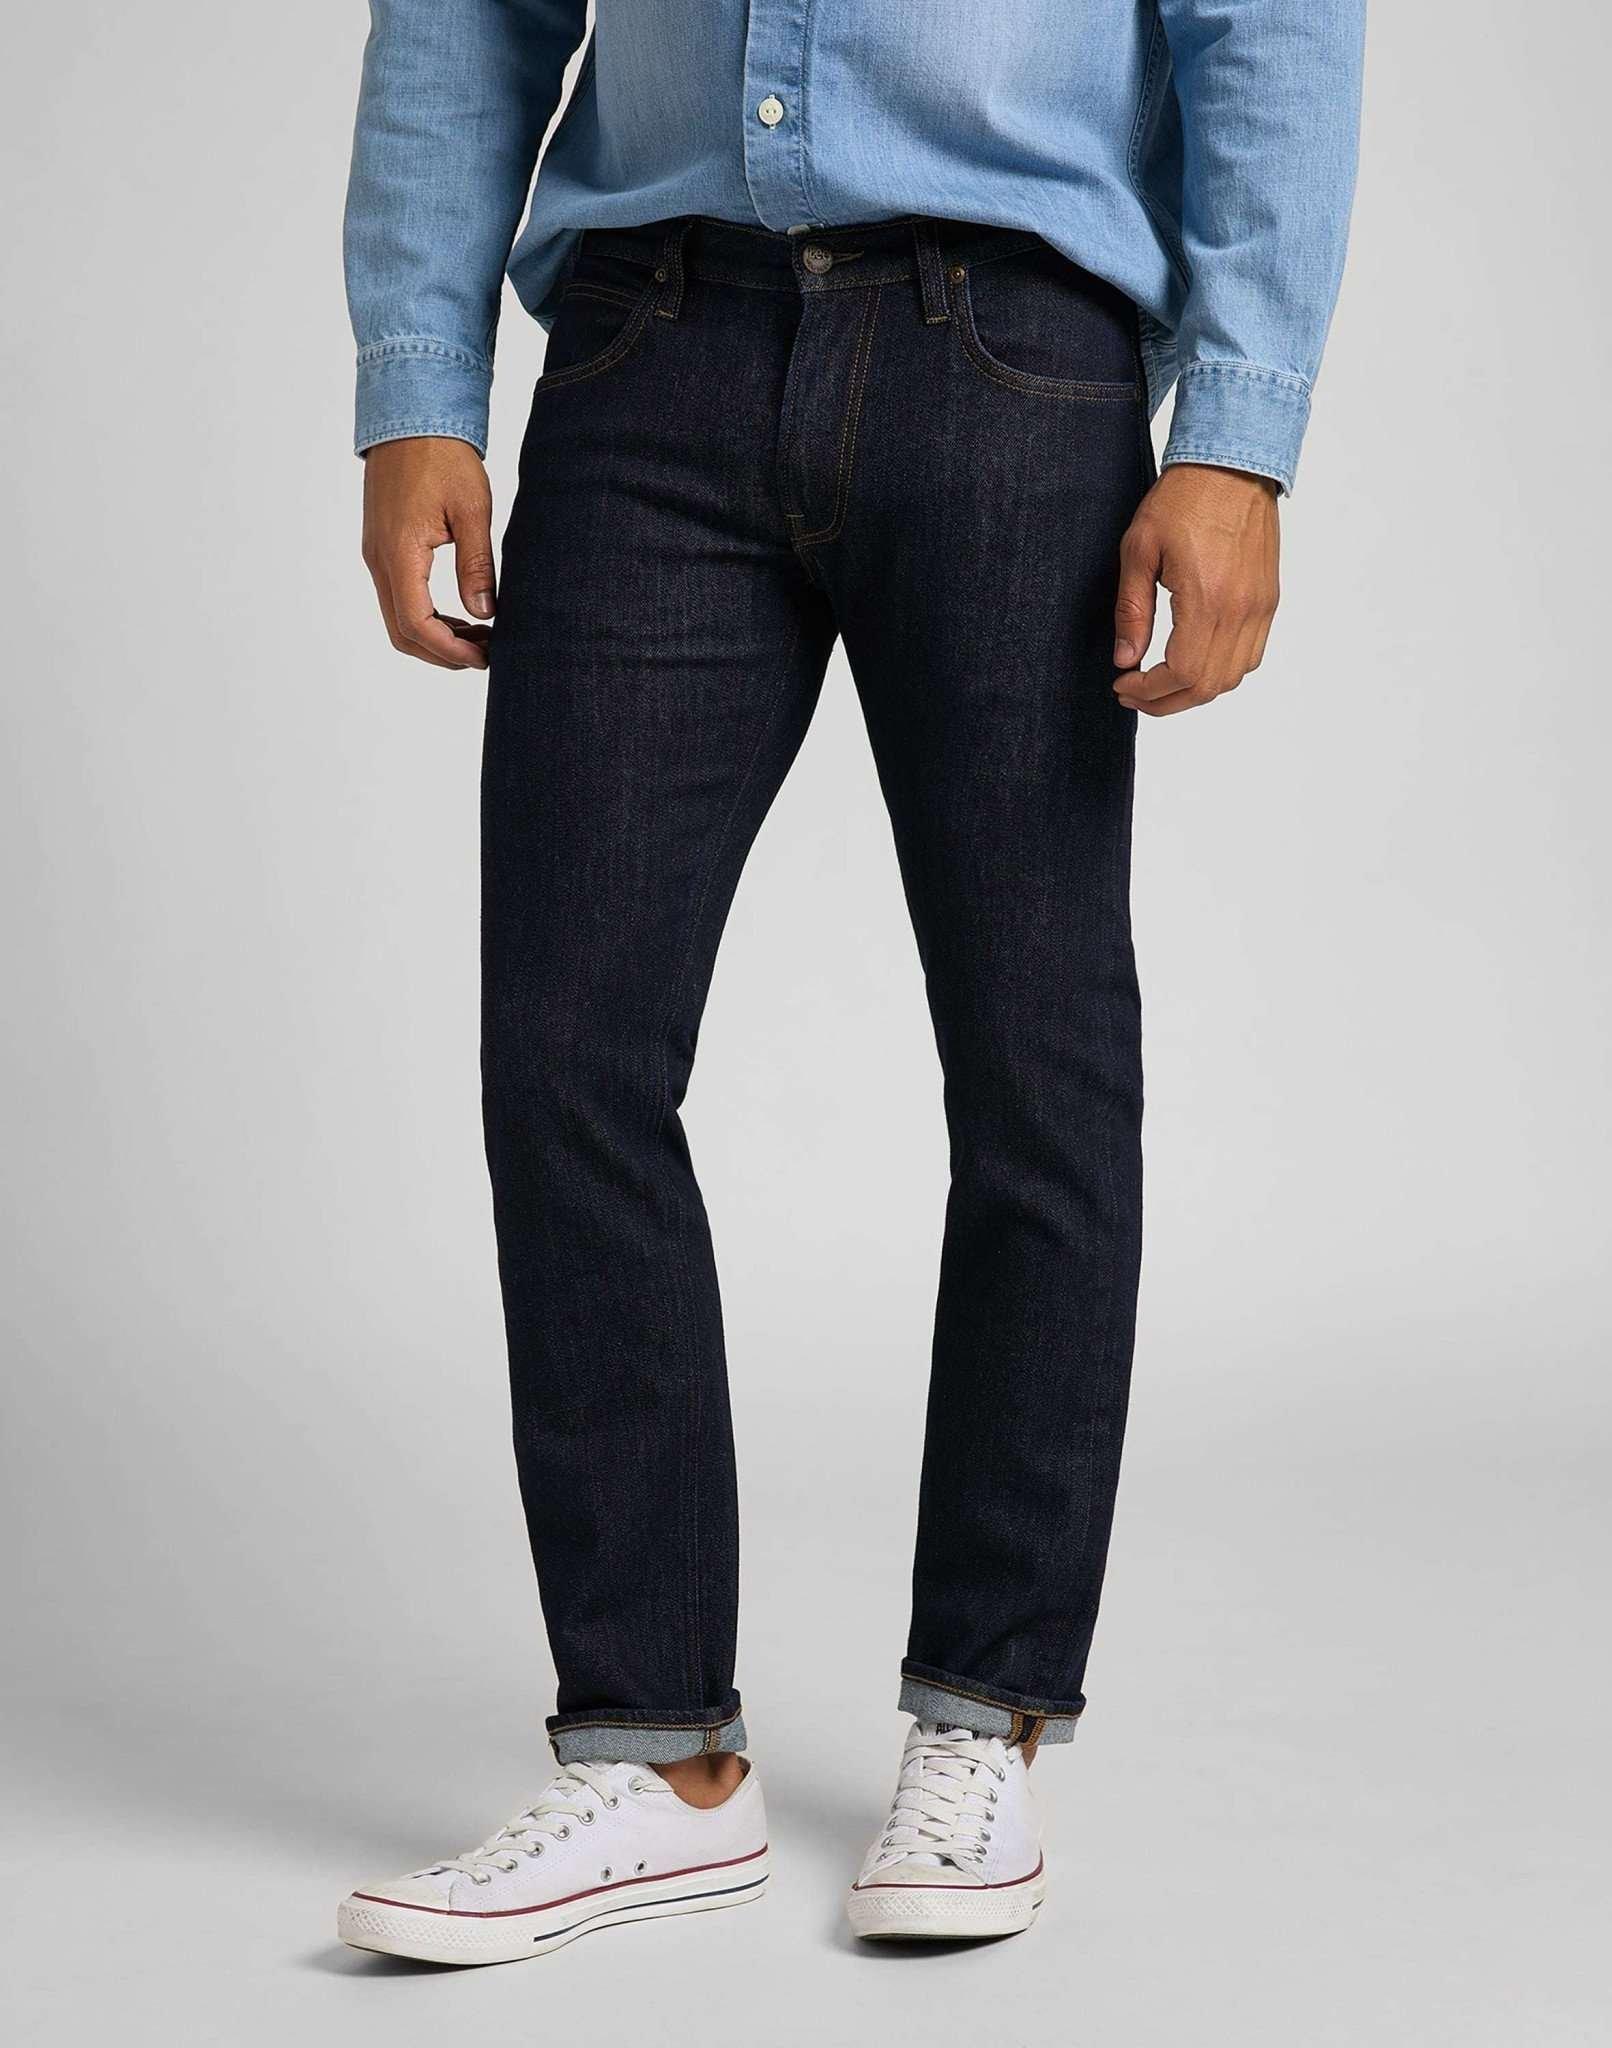 Jeans Straight Leg Daren Herren Blau Denim L32/W30 von Lee